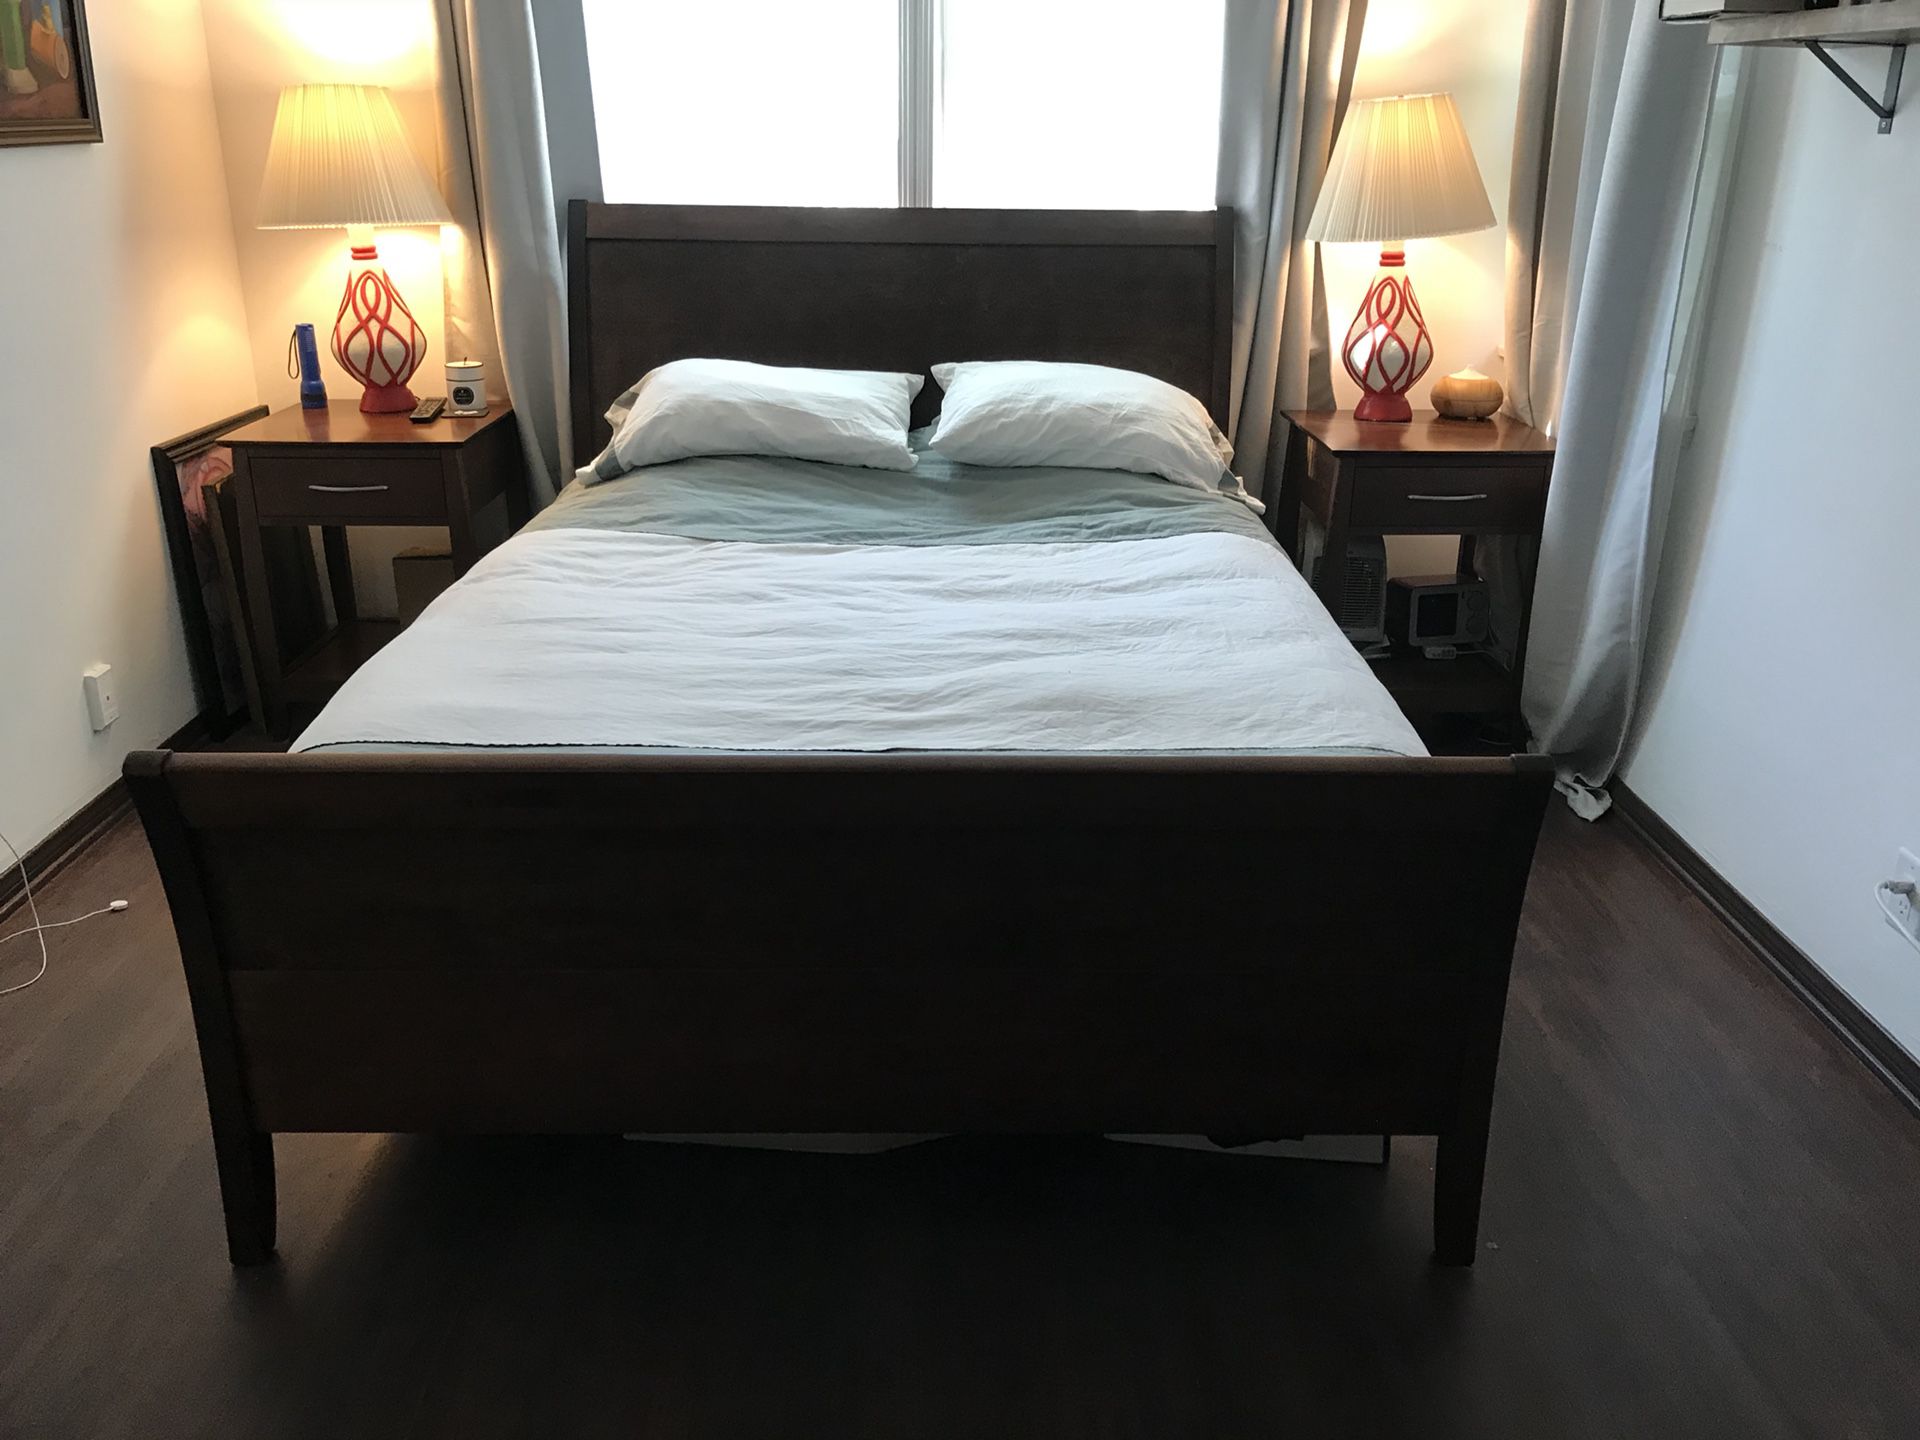 Bedroom set: Queen Size bed, Dresser, 2 nightstands. Pine wood. Excellent quality!